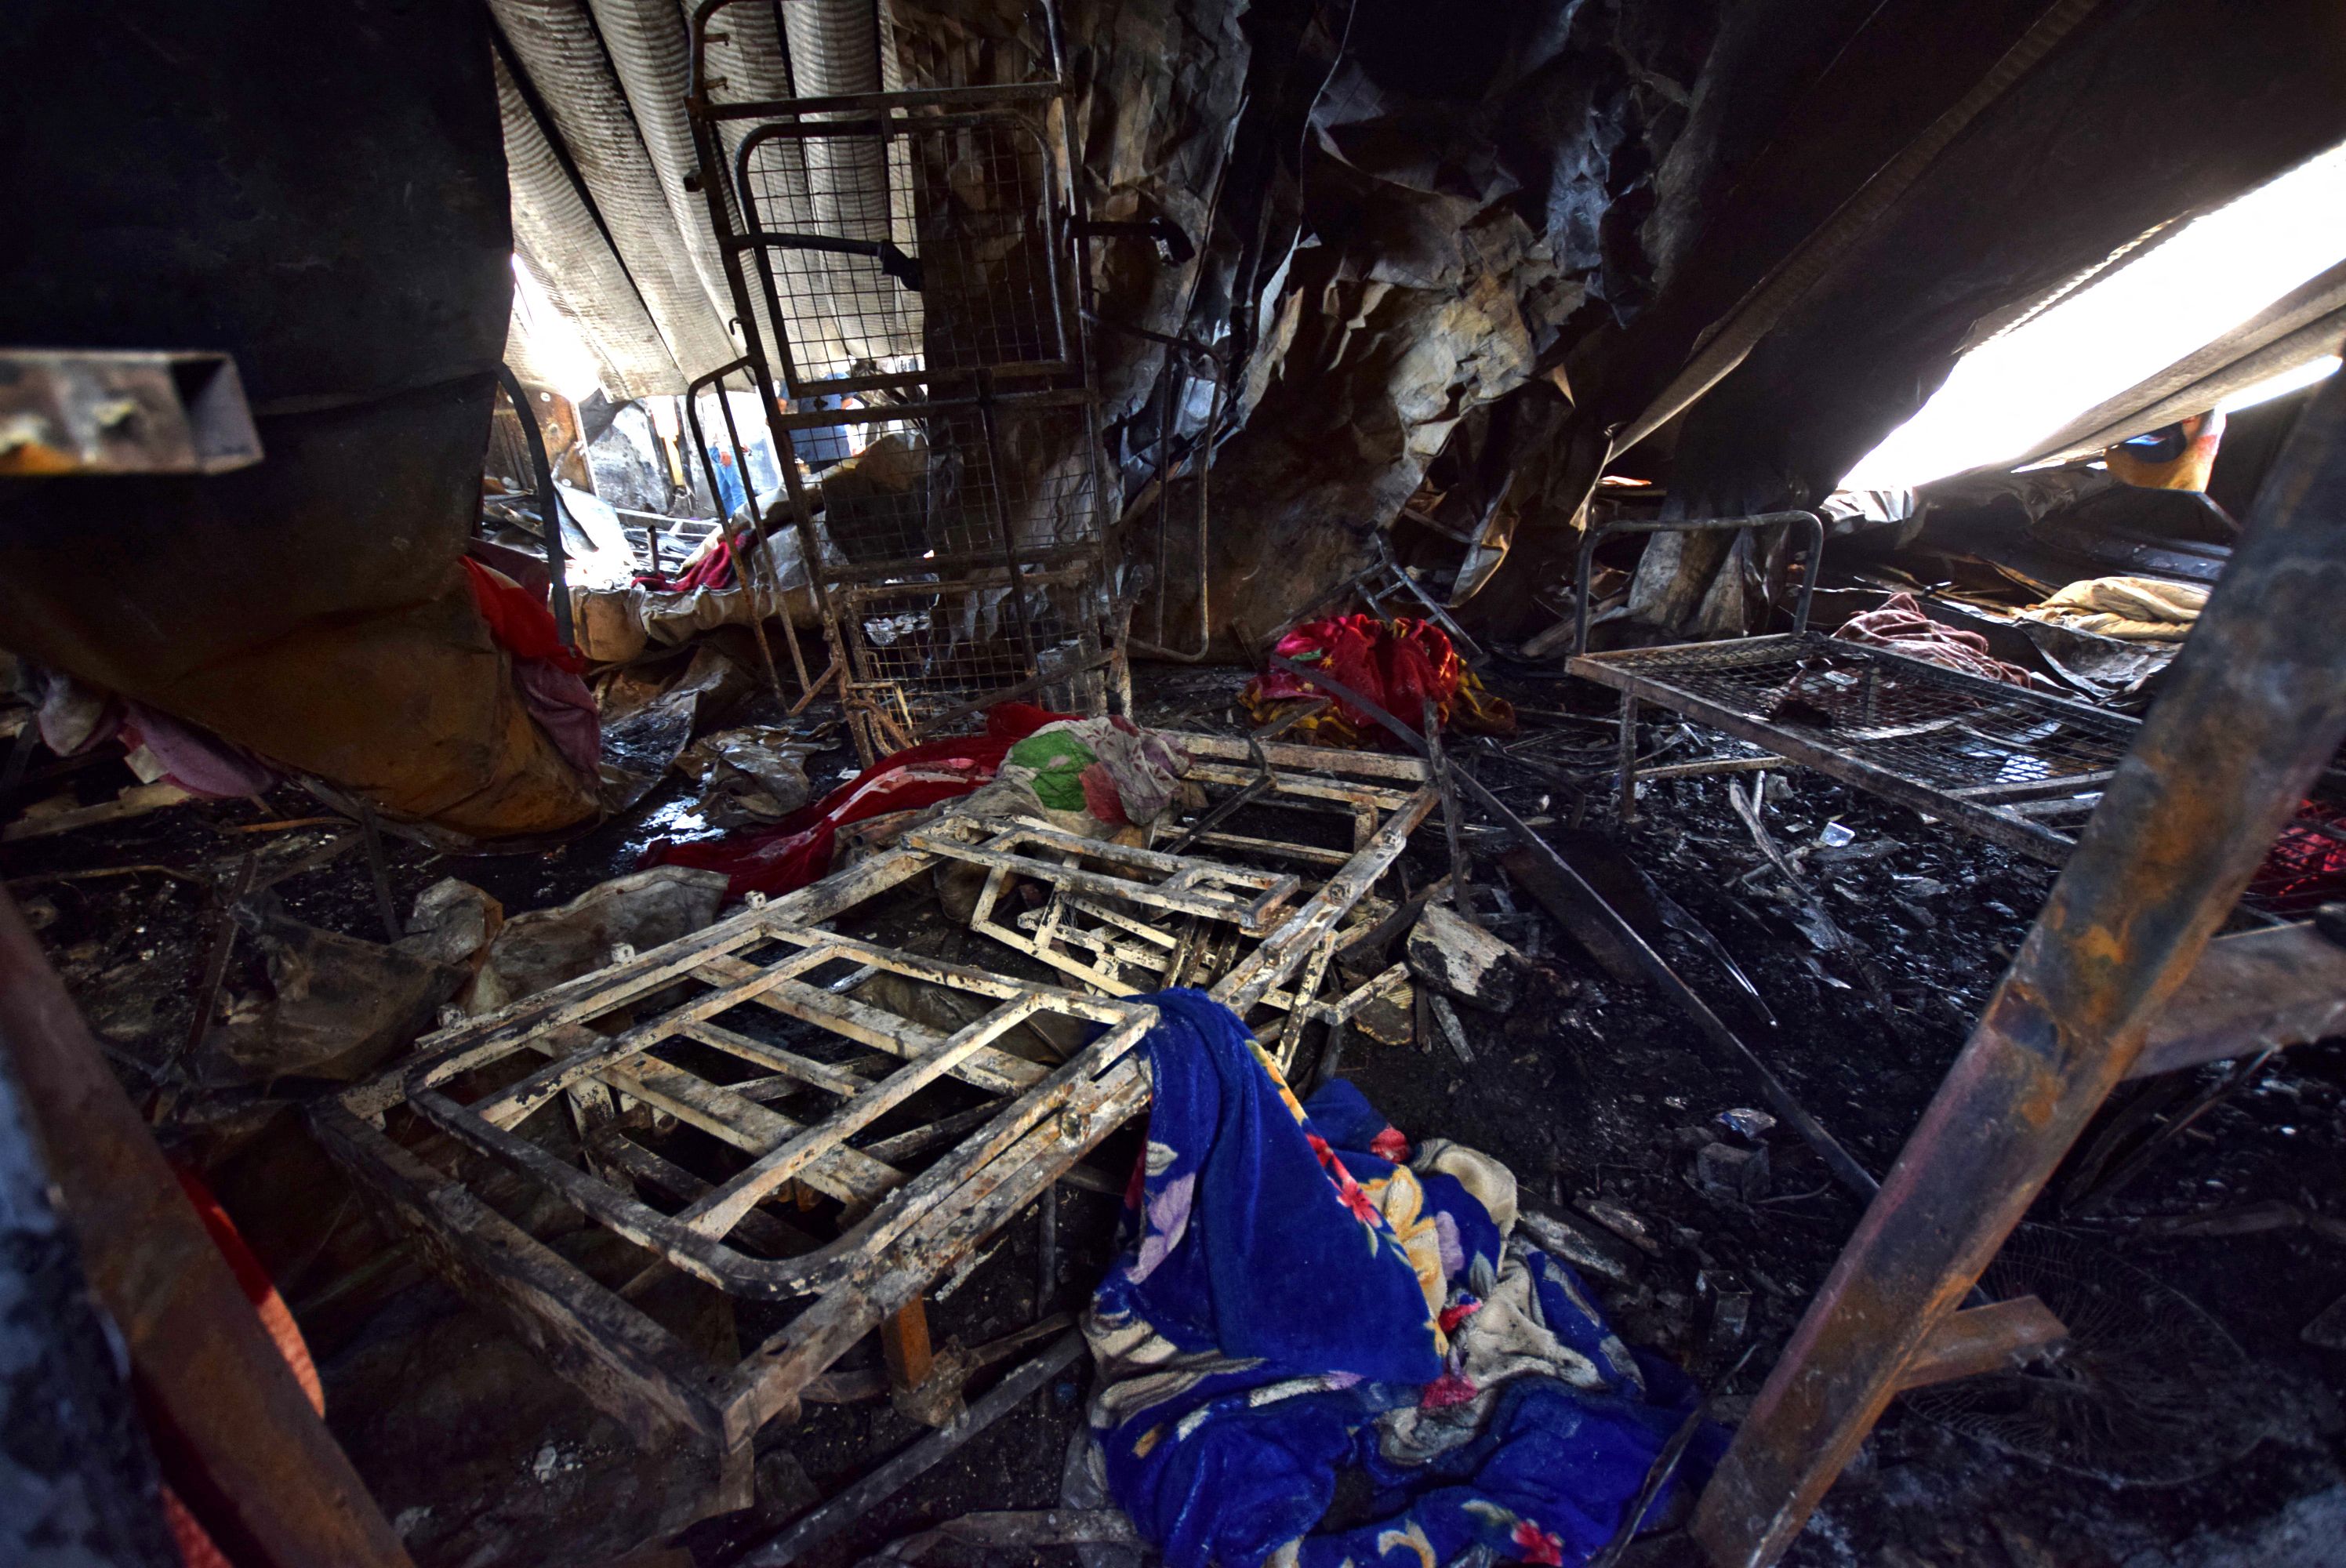 Las mantas están esparcidas entre las camas de hospital quemadas en la sala de aislamiento del coronavirus devastada del hospital Al-Hussein después de un incendio masivo durante la noche, en la ciudad de Nasiriyah, en el sur de Irak, el 13 de julio de 2021